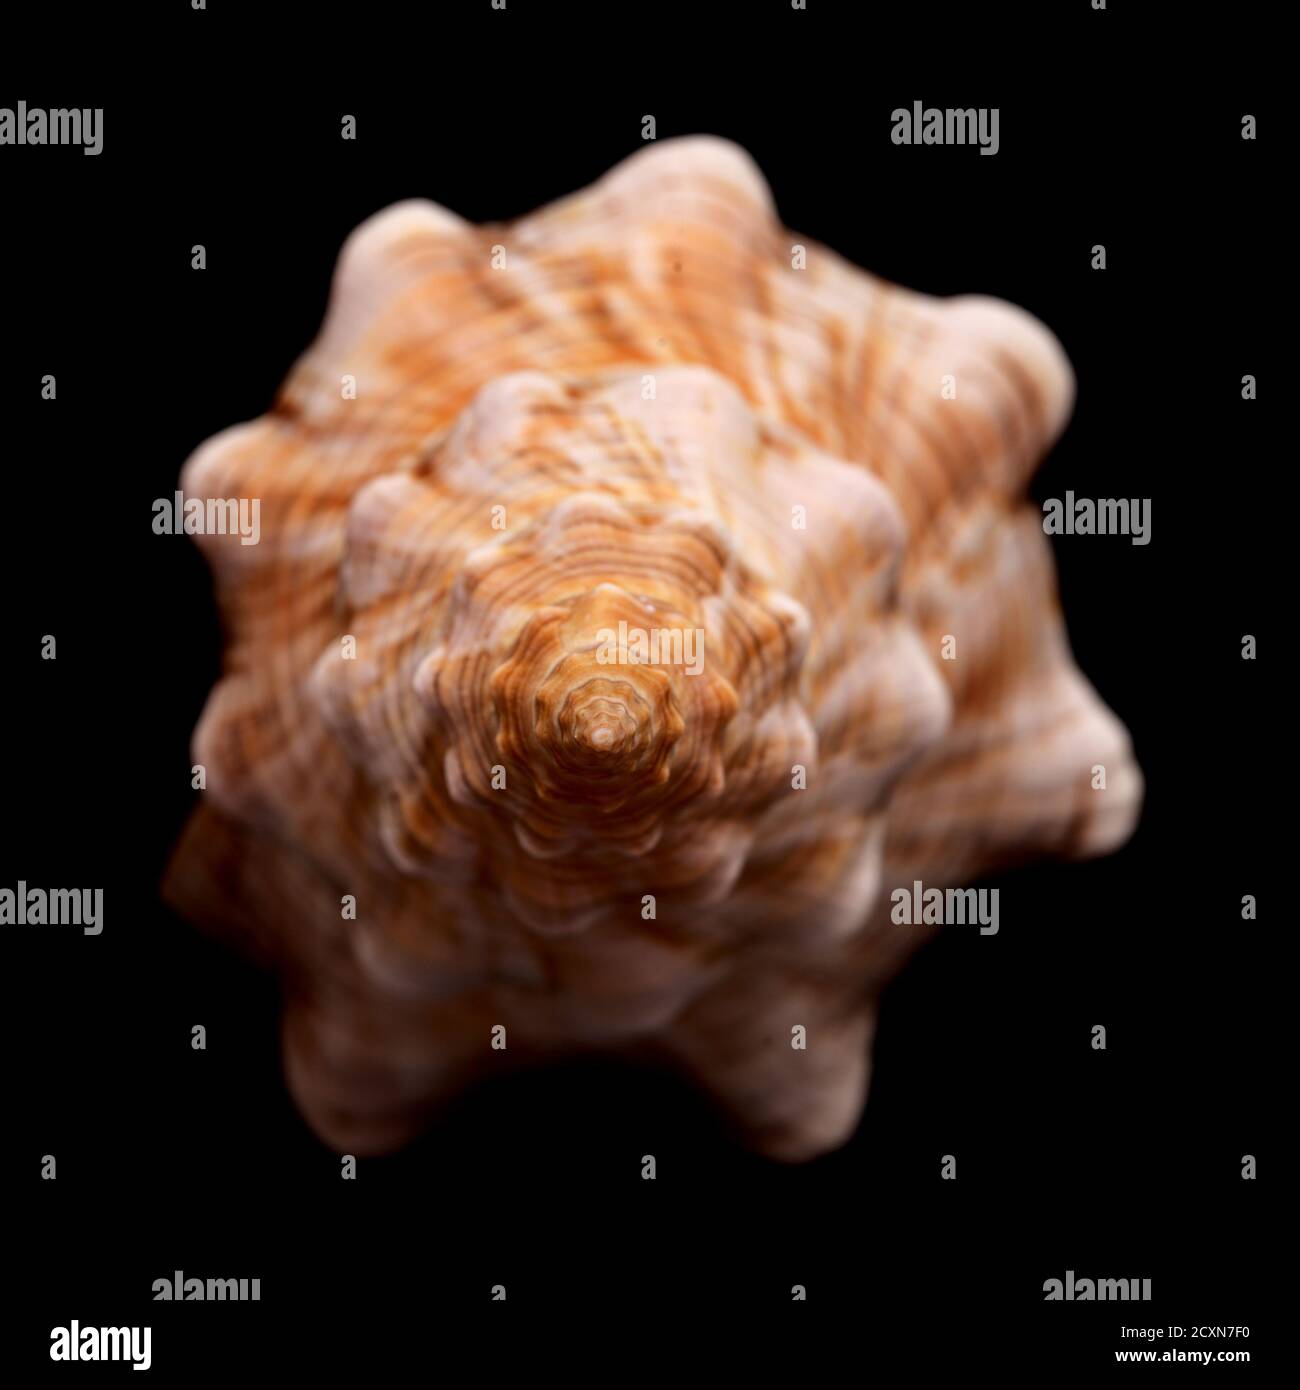 Pleuroploca trapezium, trapezium horse conch shell isolated on black Stock Photo